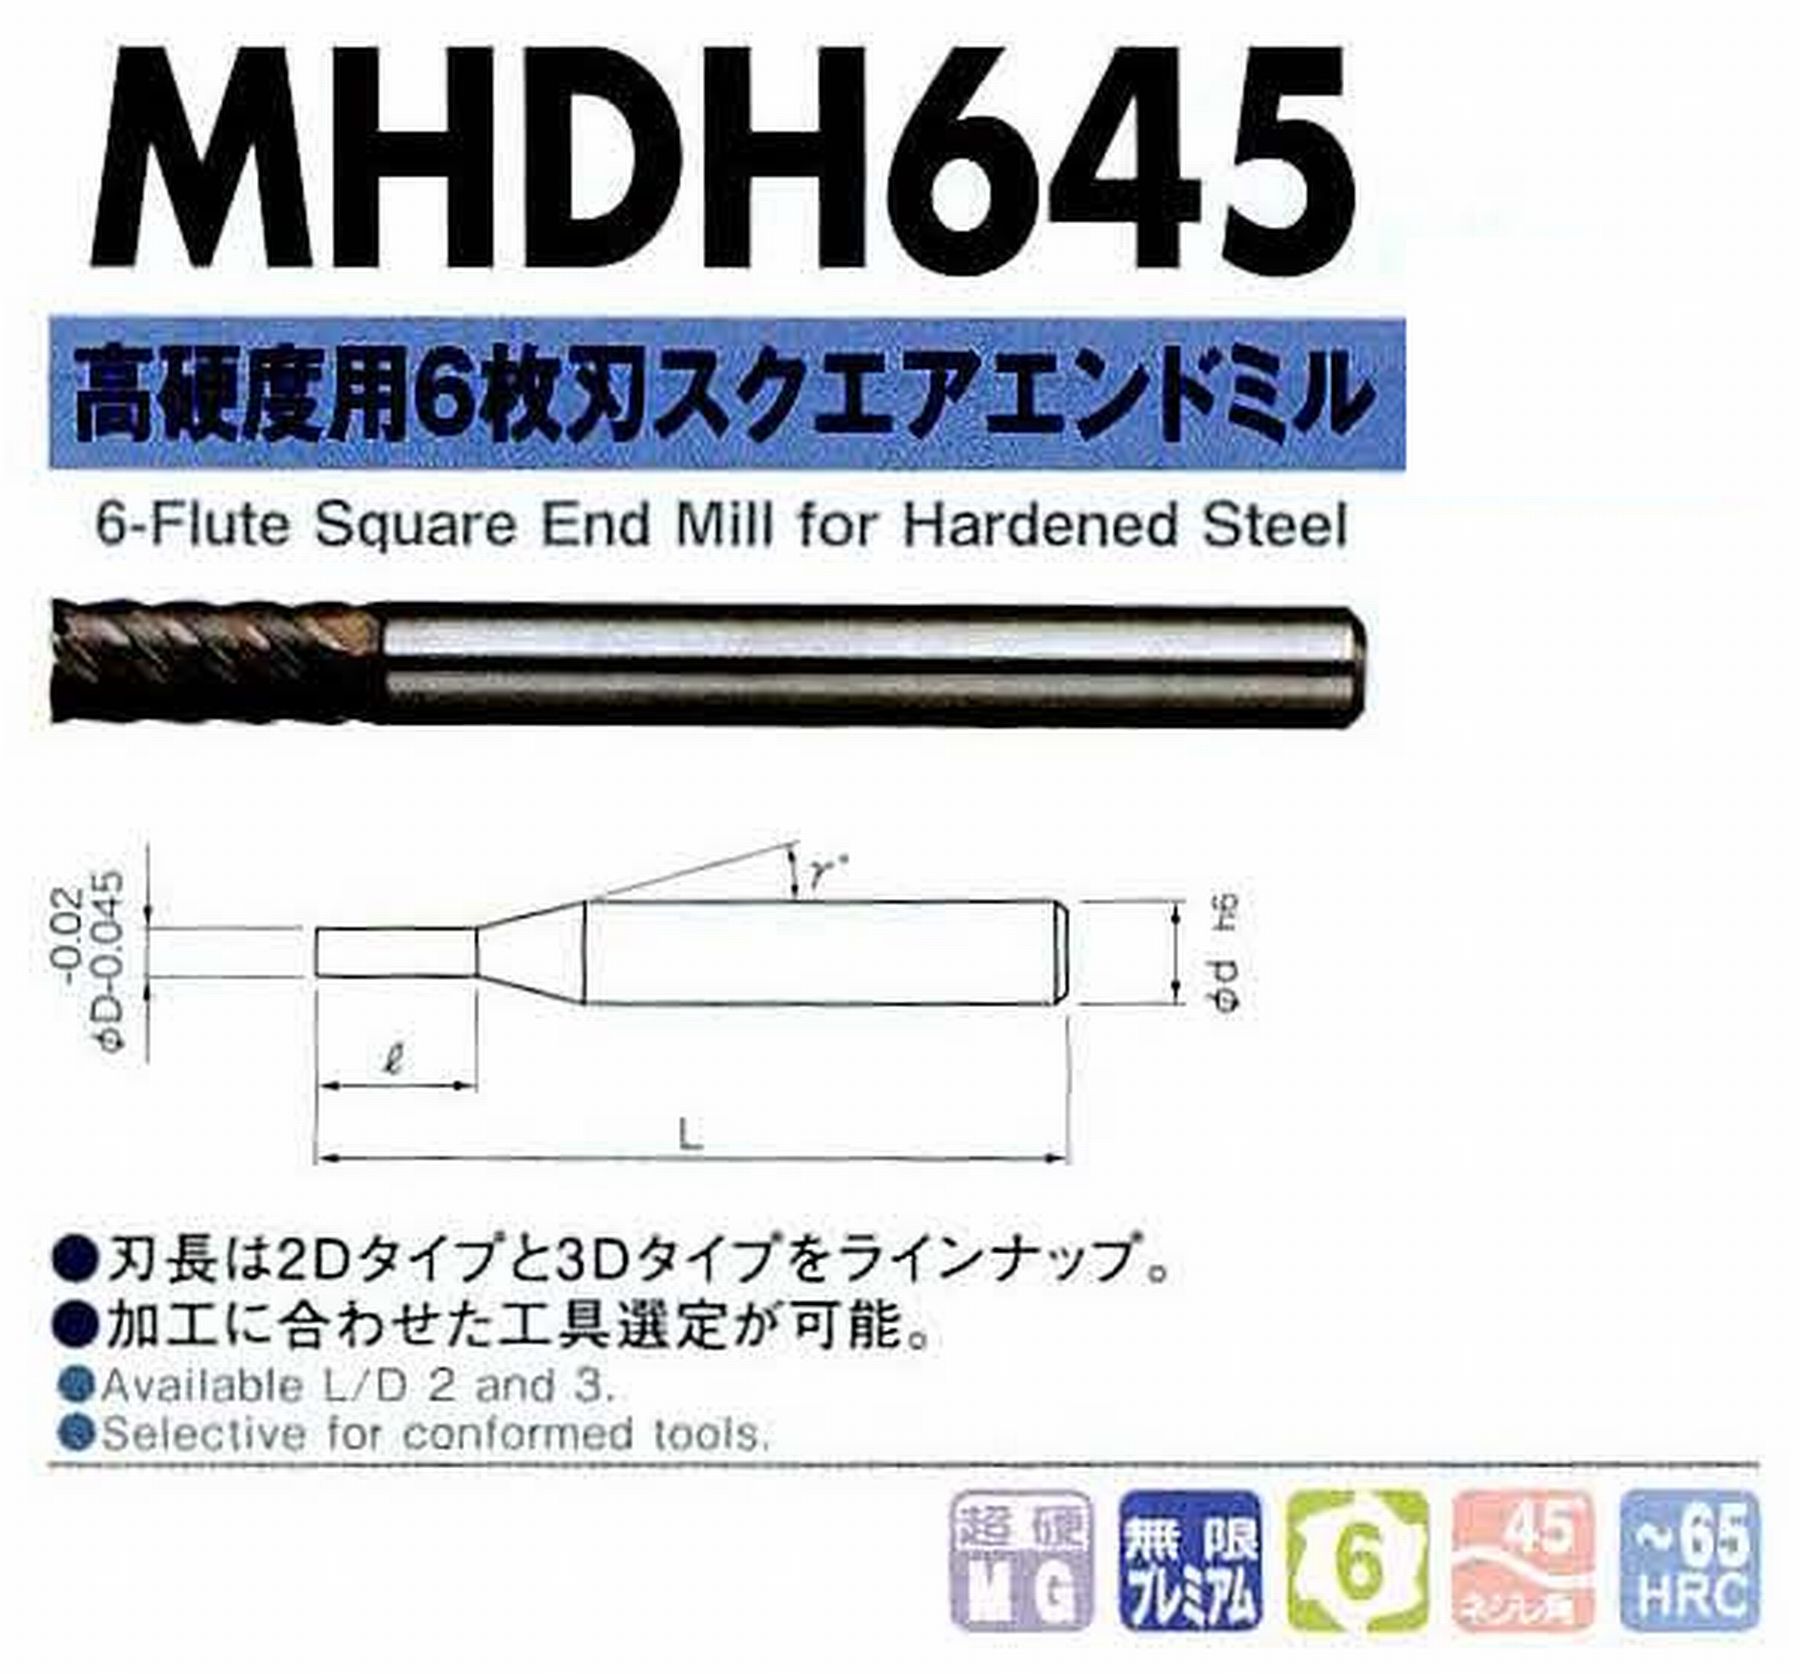 NS 日進工具 MHDH645 高硬度用6枚刃スクエアエンドミル コードNO．08-00428-00801 刃径8 刃長24 首角- シャンク径8mm 全長70